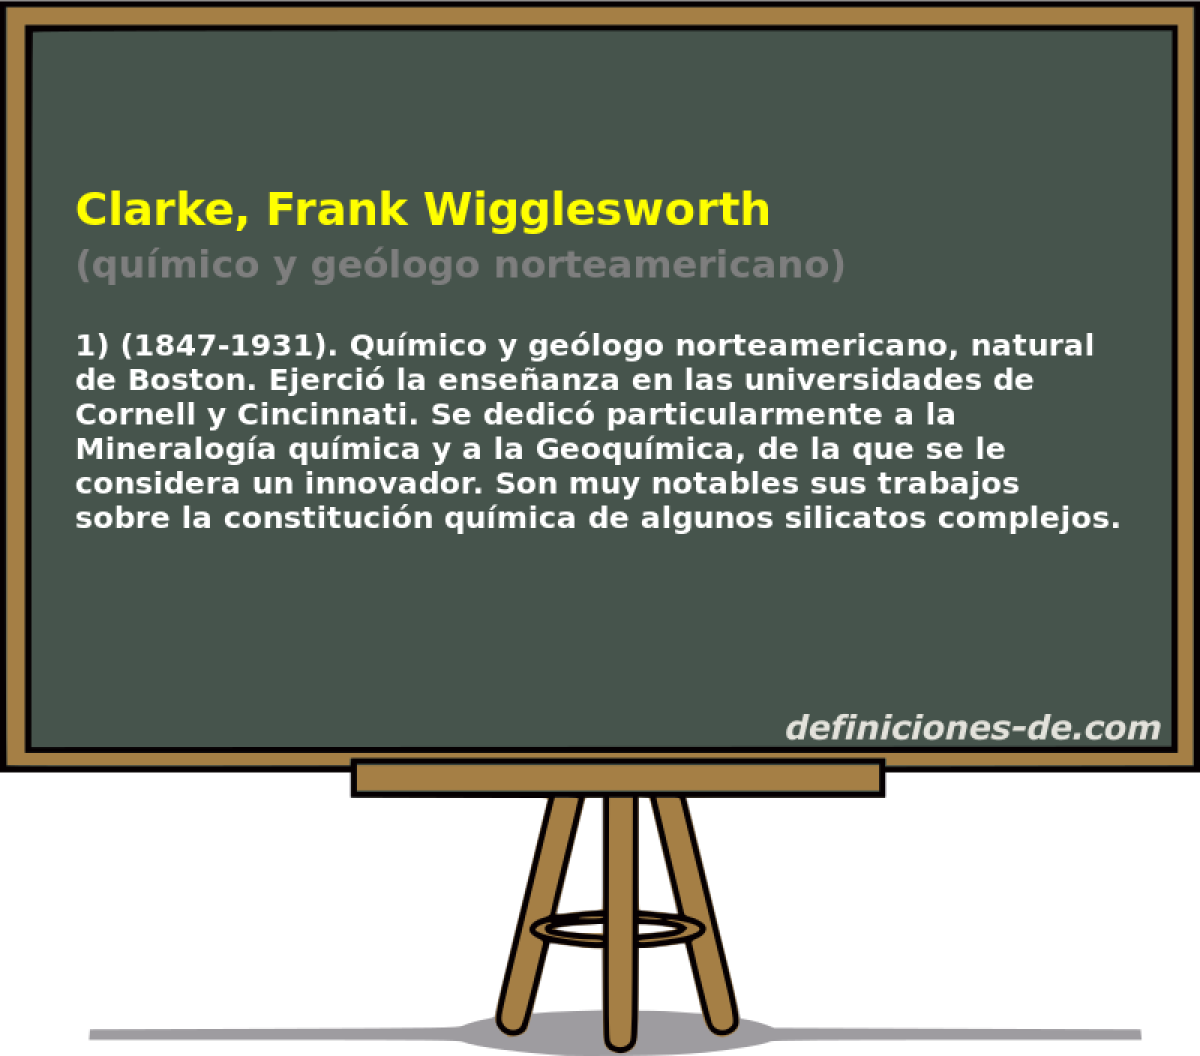 Clarke, Frank Wigglesworth (qumico y gelogo norteamericano)